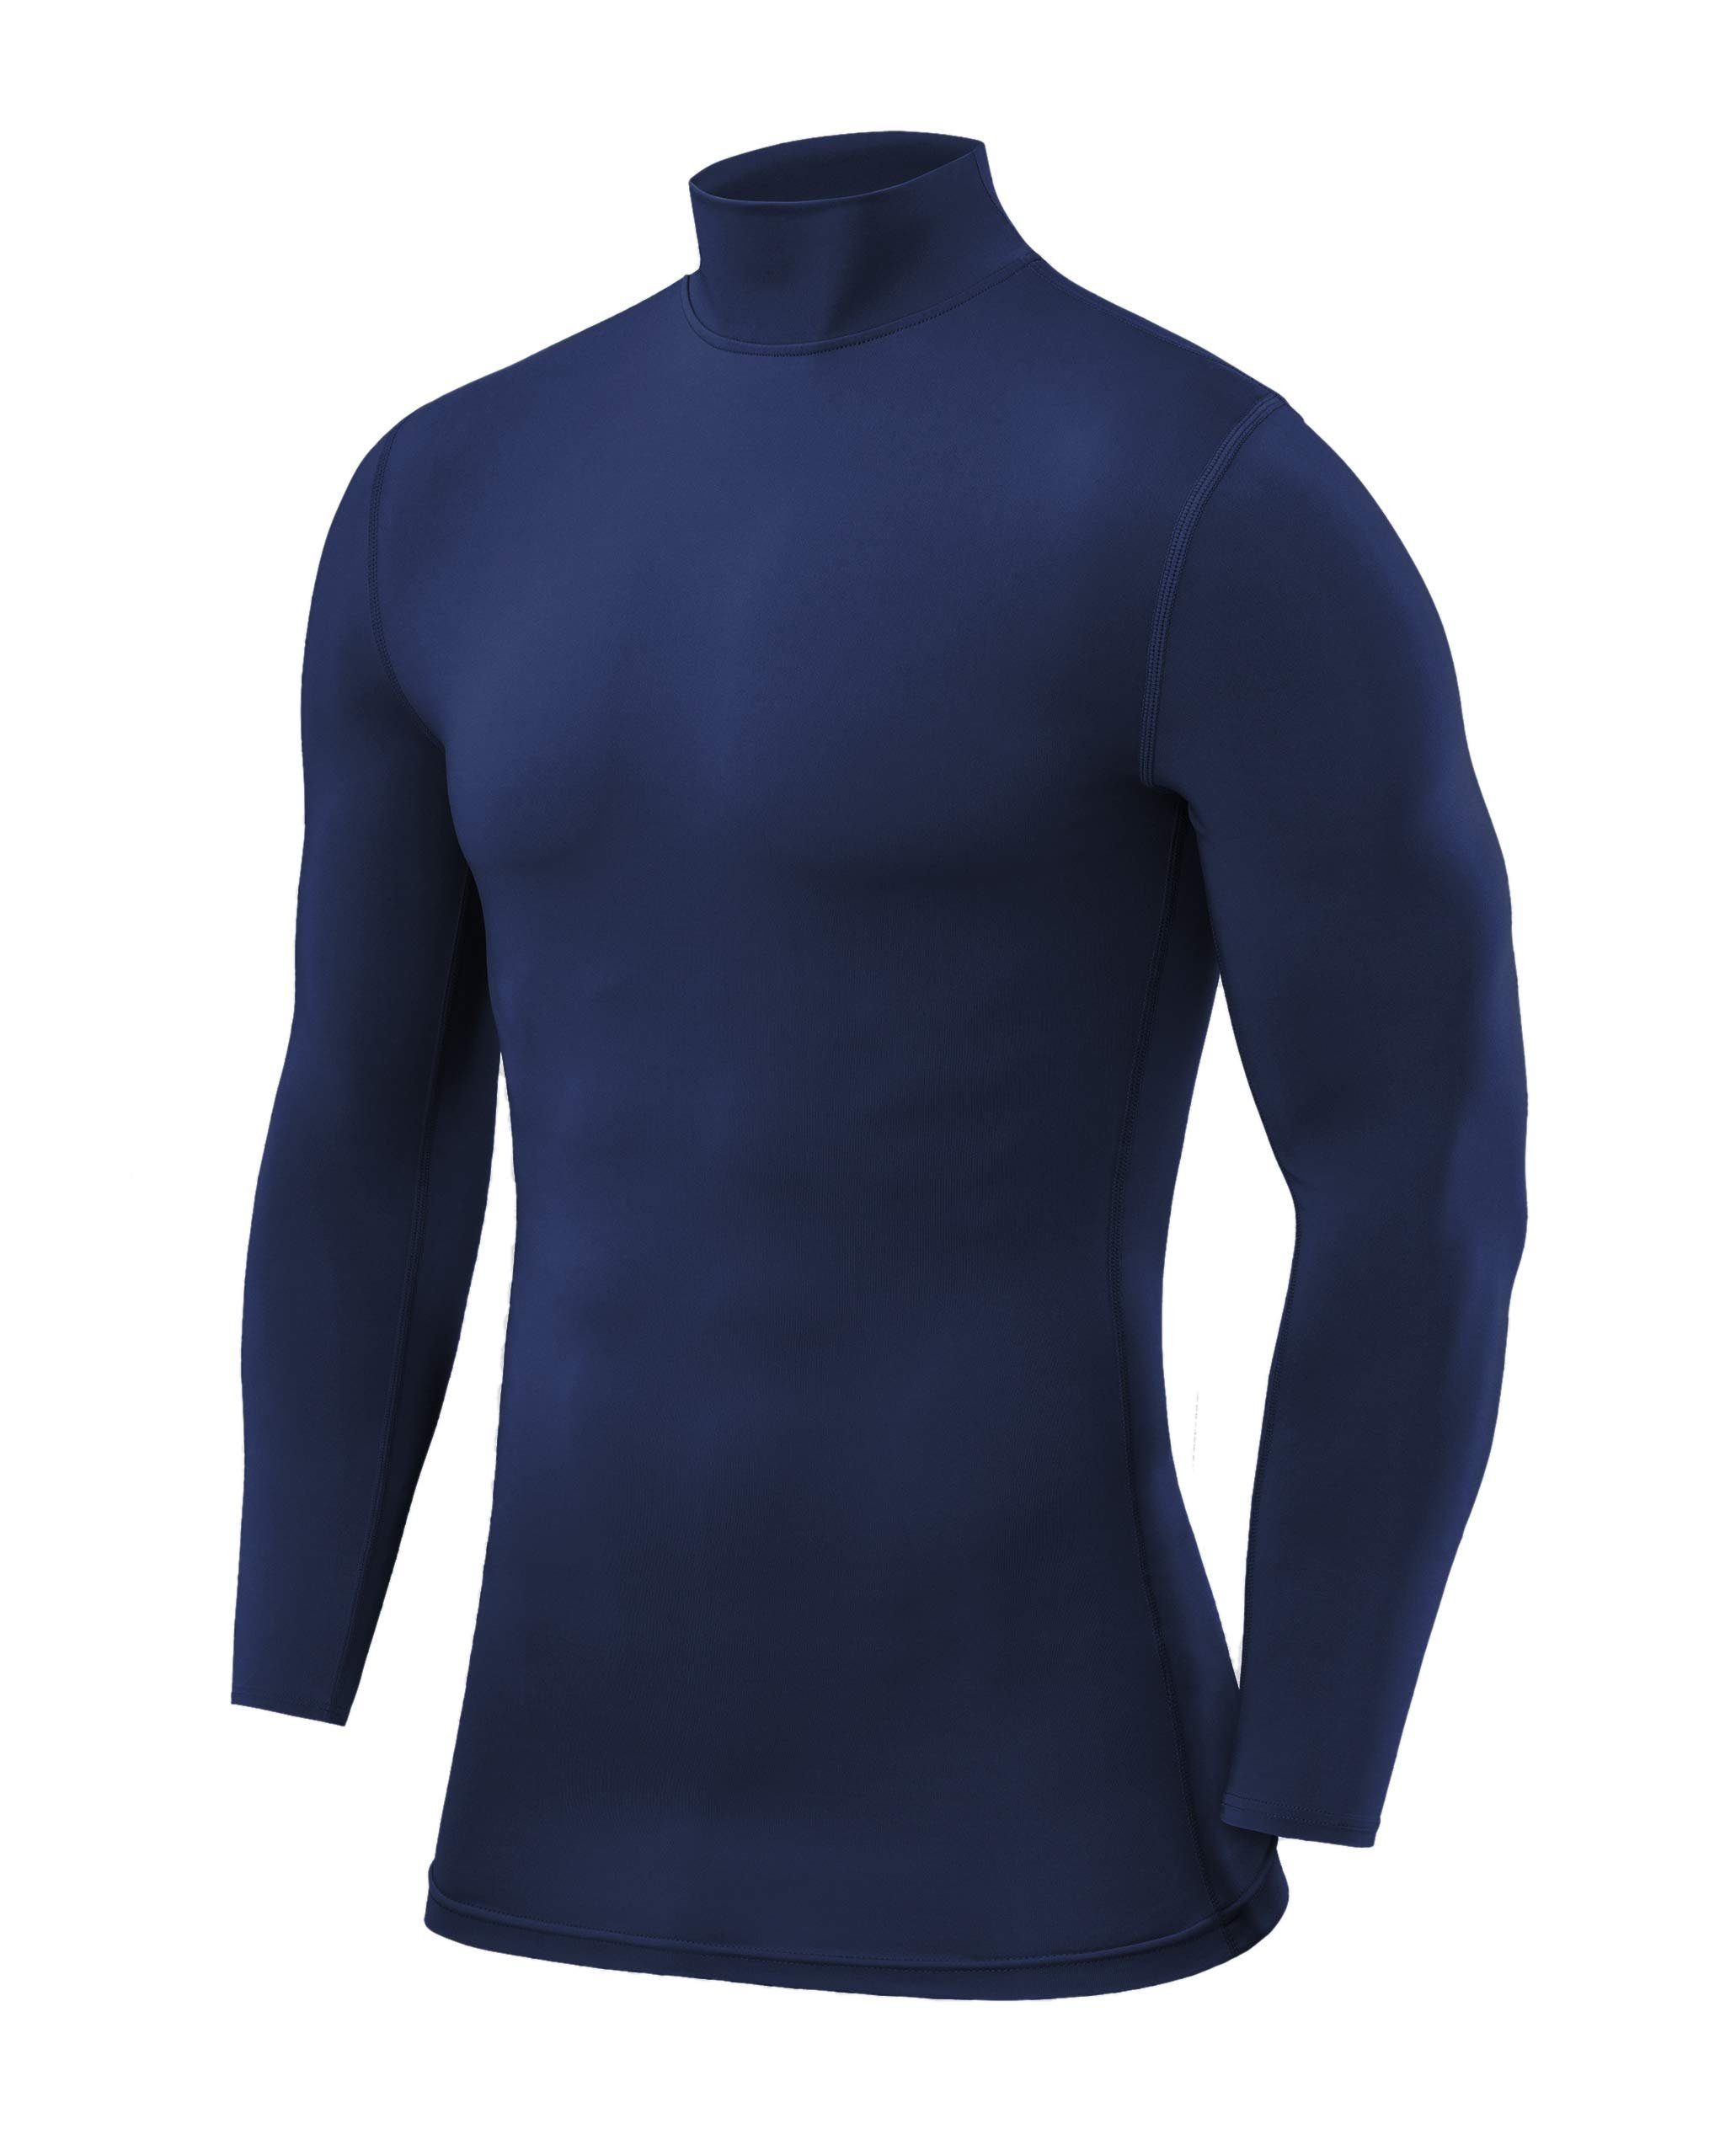 POWERLAYER Langarmshirt PowerLayer Herren Kompressionsshirt Langarm Mock Neck - Blau, XL